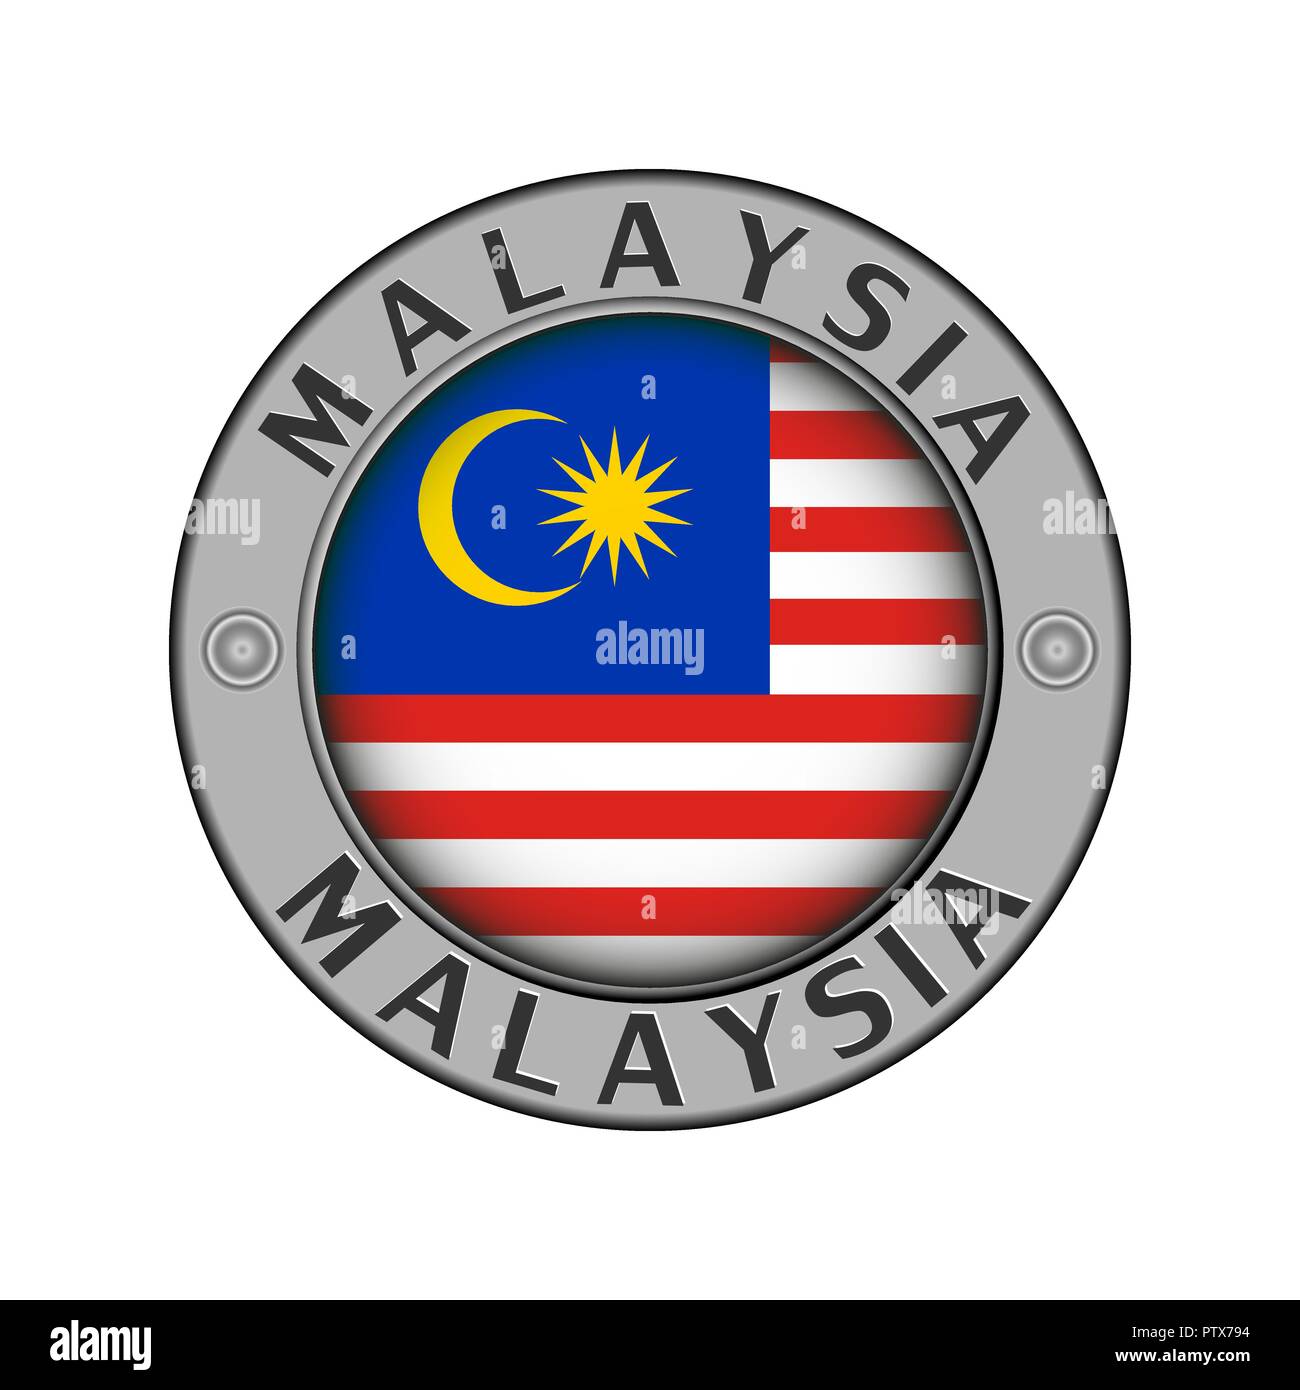 Rotondo di metallo medaglione con il nome del paese della Malaysia e un indicatore rotondo nel centro Illustrazione Vettoriale